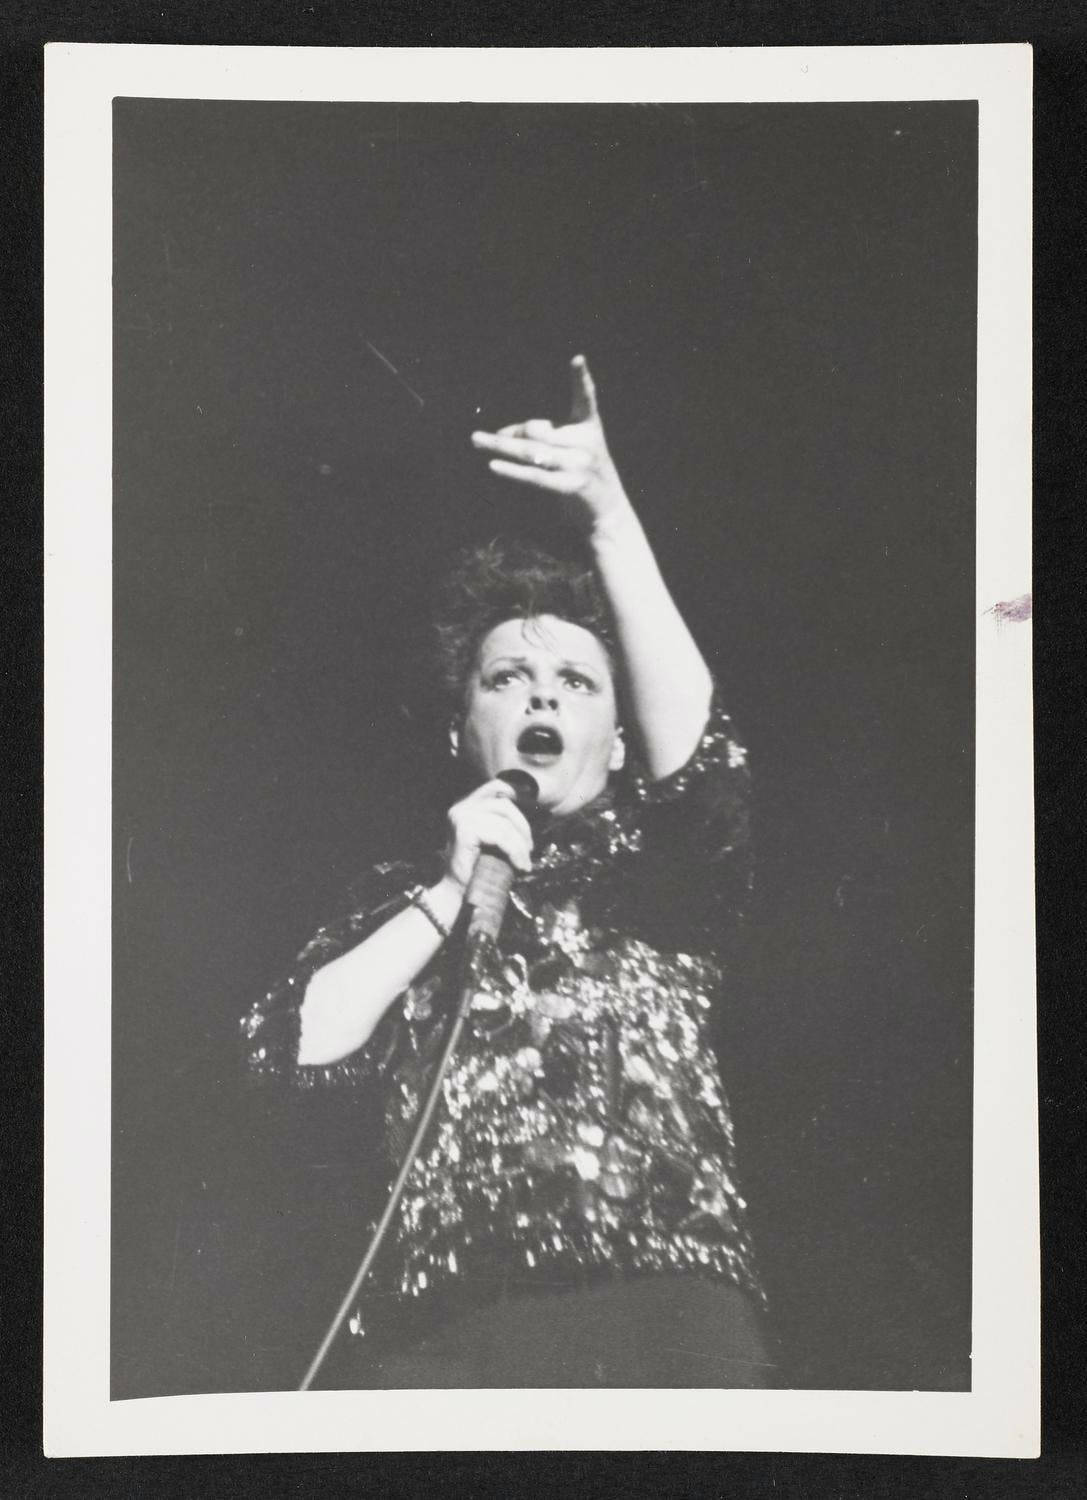 Portadacon El Retrato De La Actriz Y Cantante Estadounidense Judy Garland Fondo de pantalla